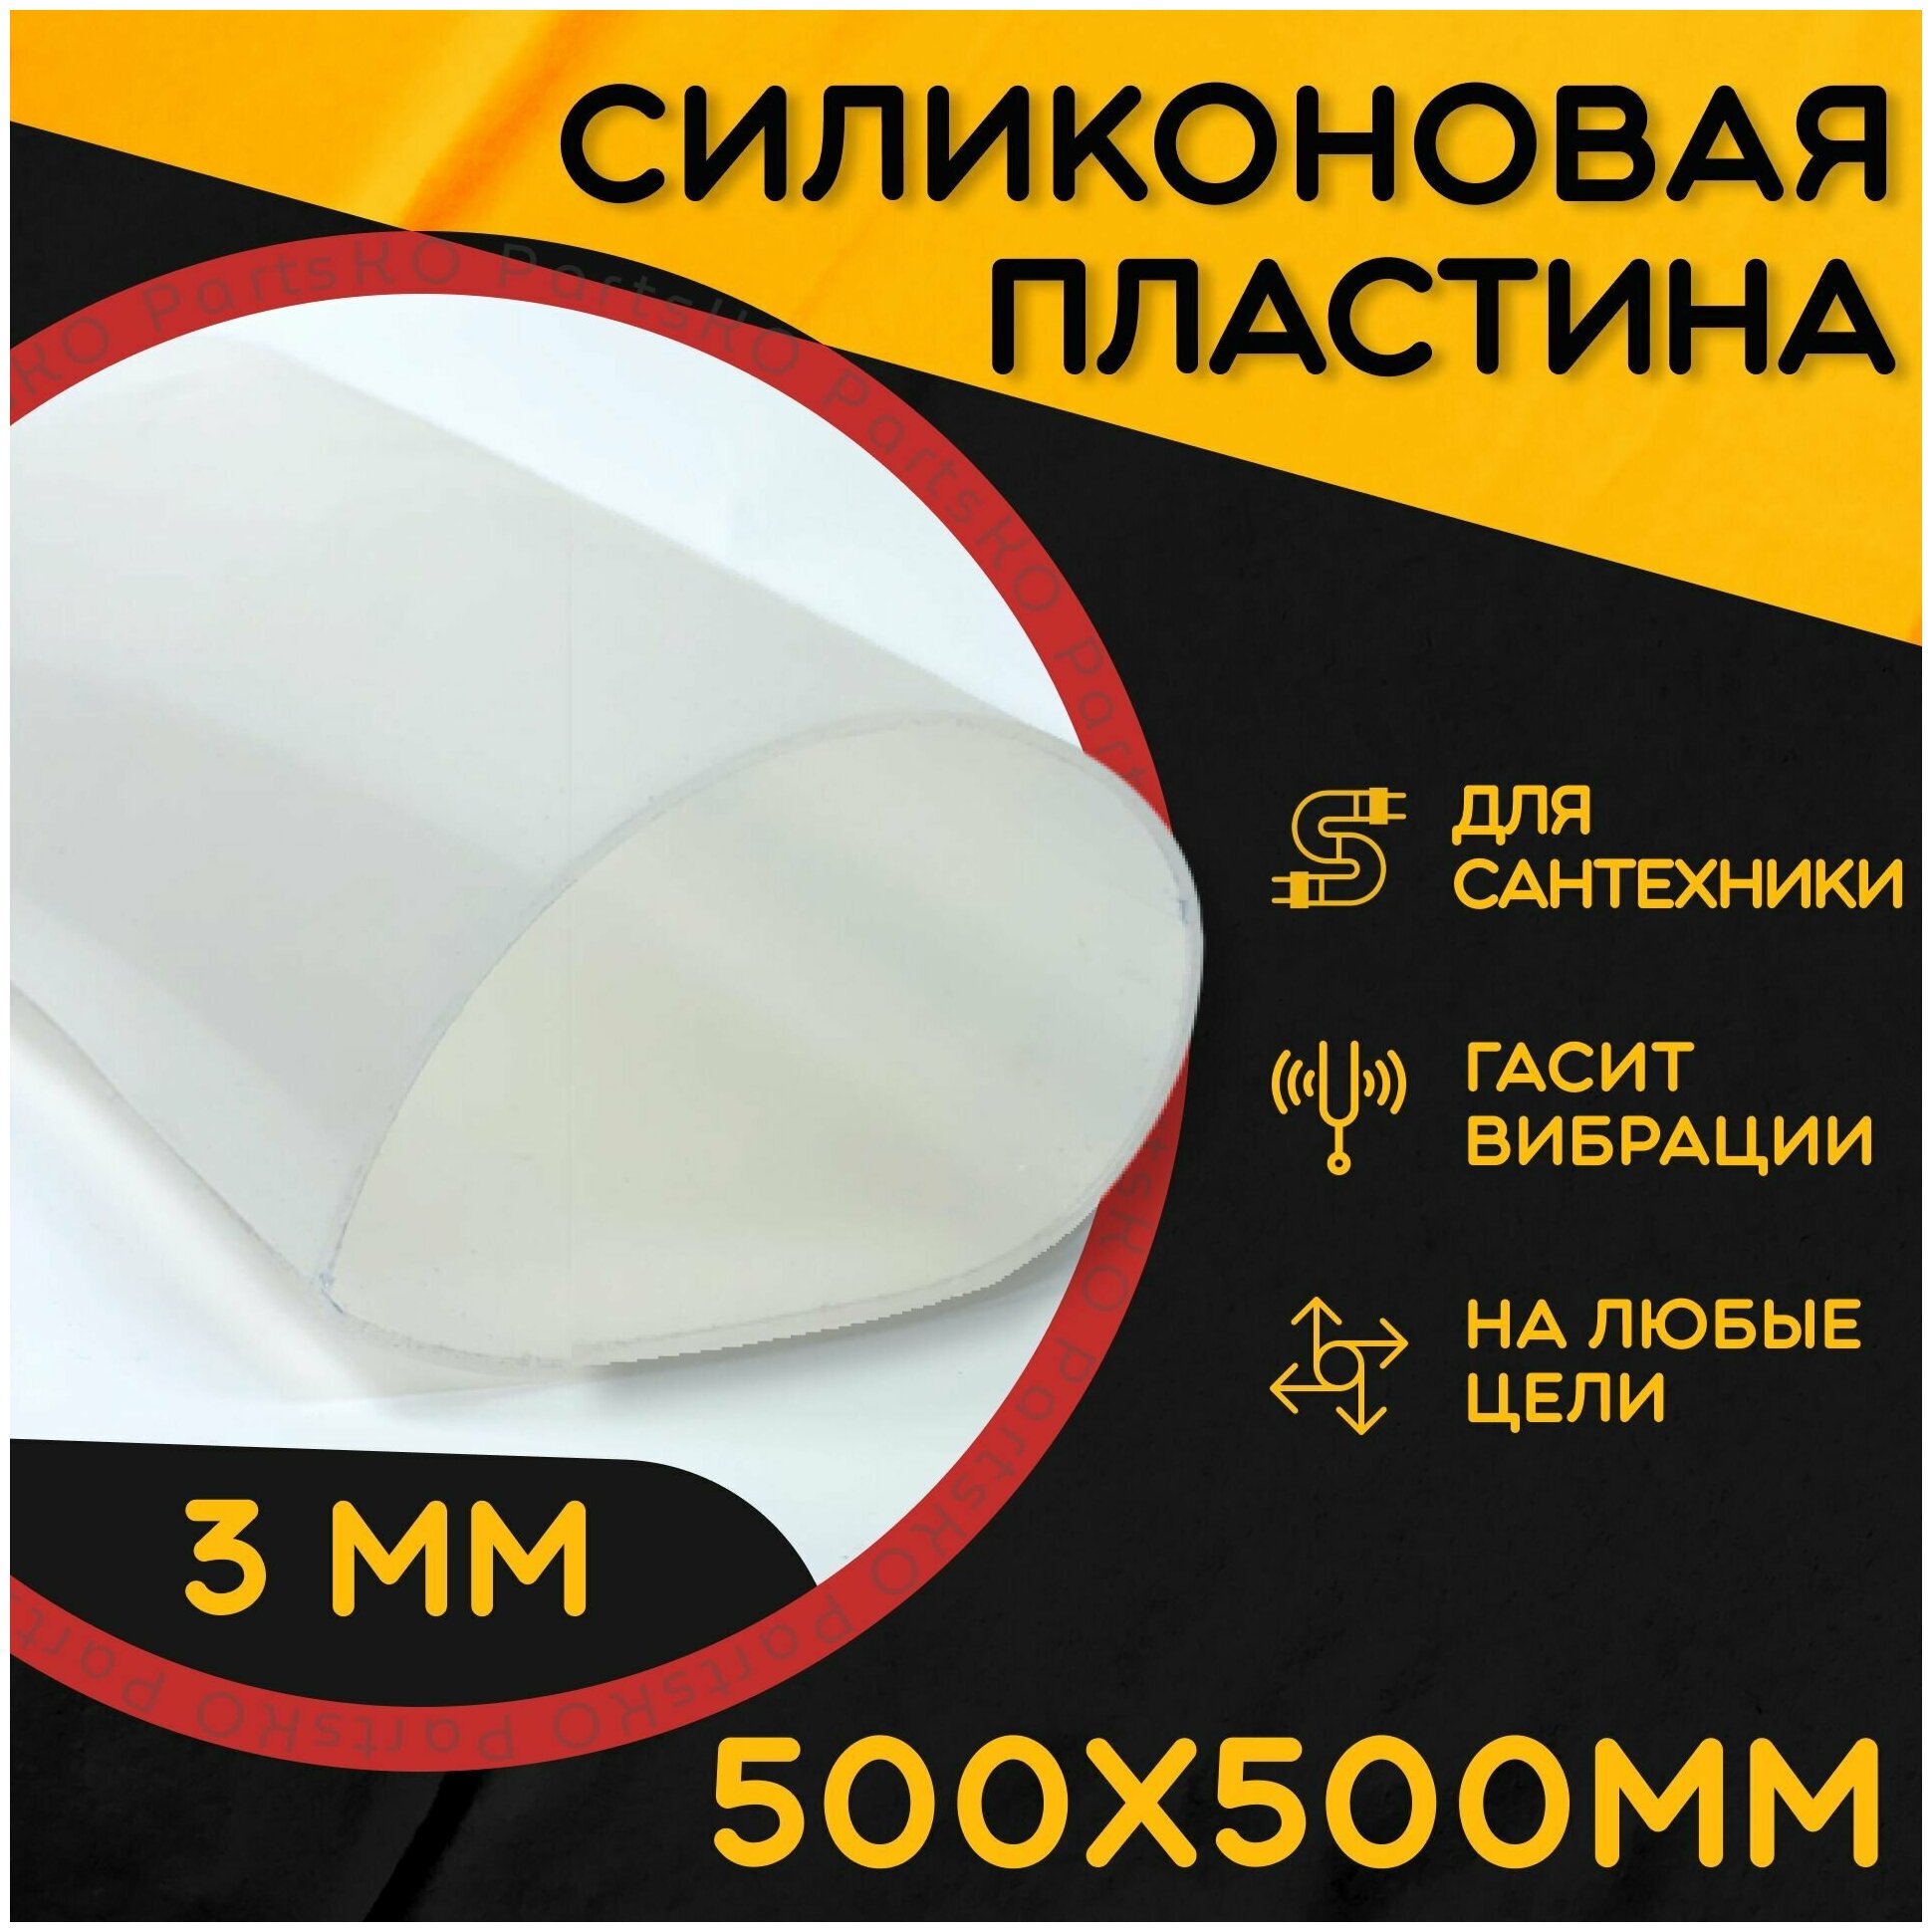 Силиконовая резина термостойкая. Толщина 3 мм. Размер 500х500 мм / Уплотнительная прокладка / Силиконовая пластина белого цвета.